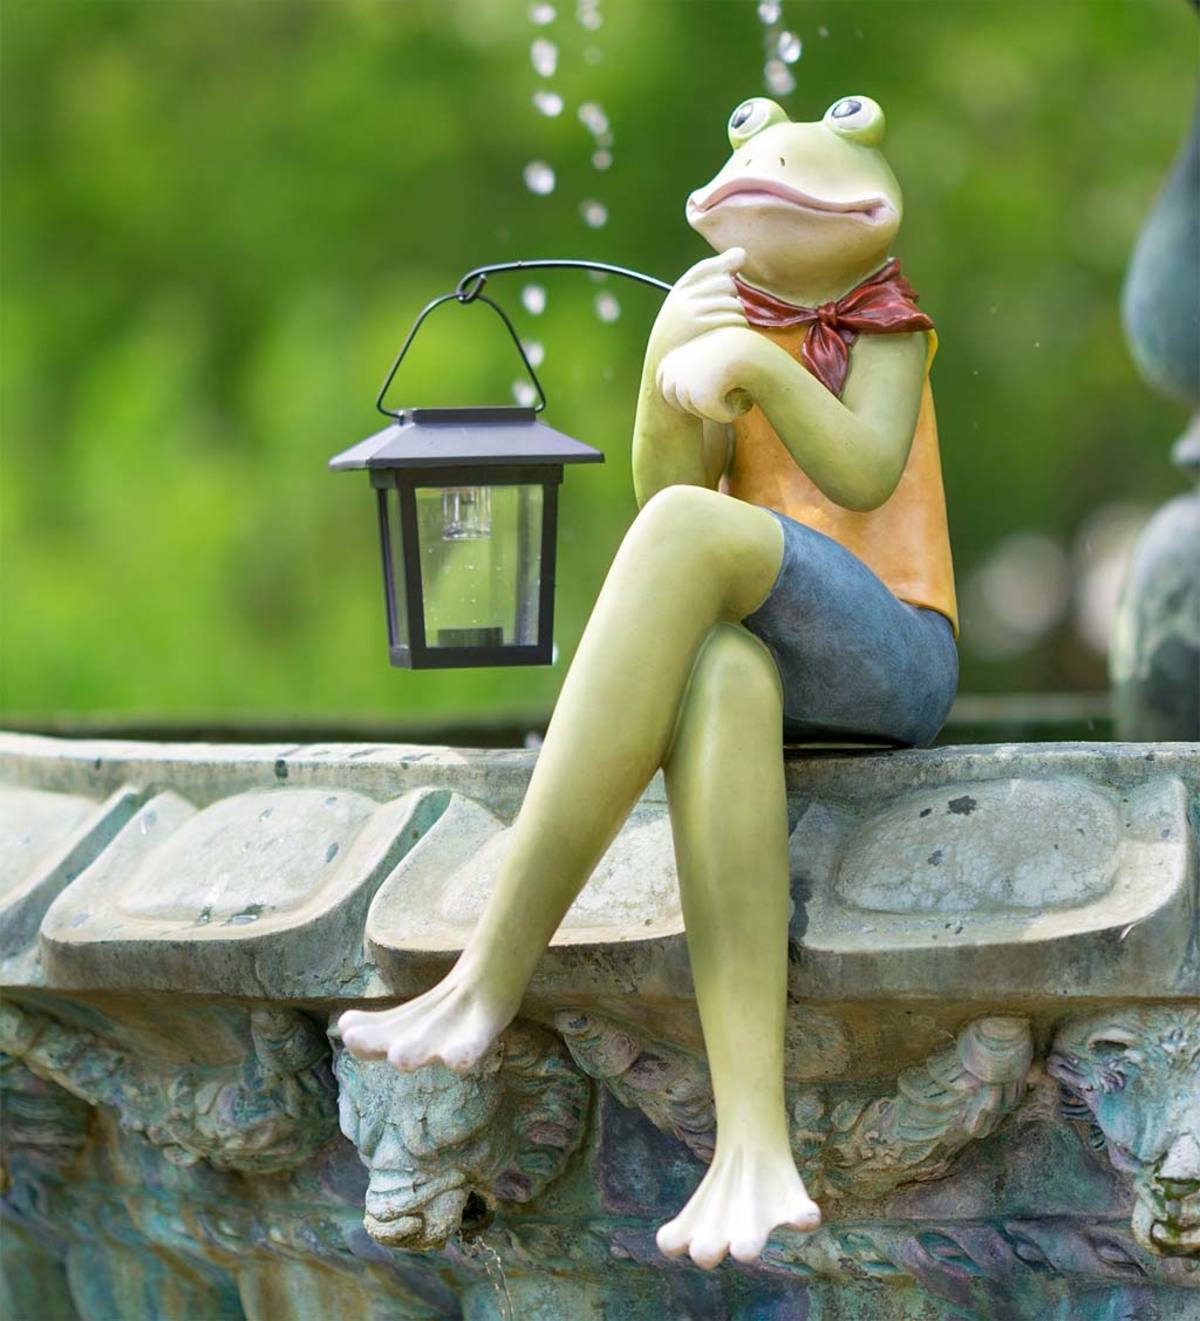 Indoor/Outdoor Sitting Frog Sculpture with Solar Lantern